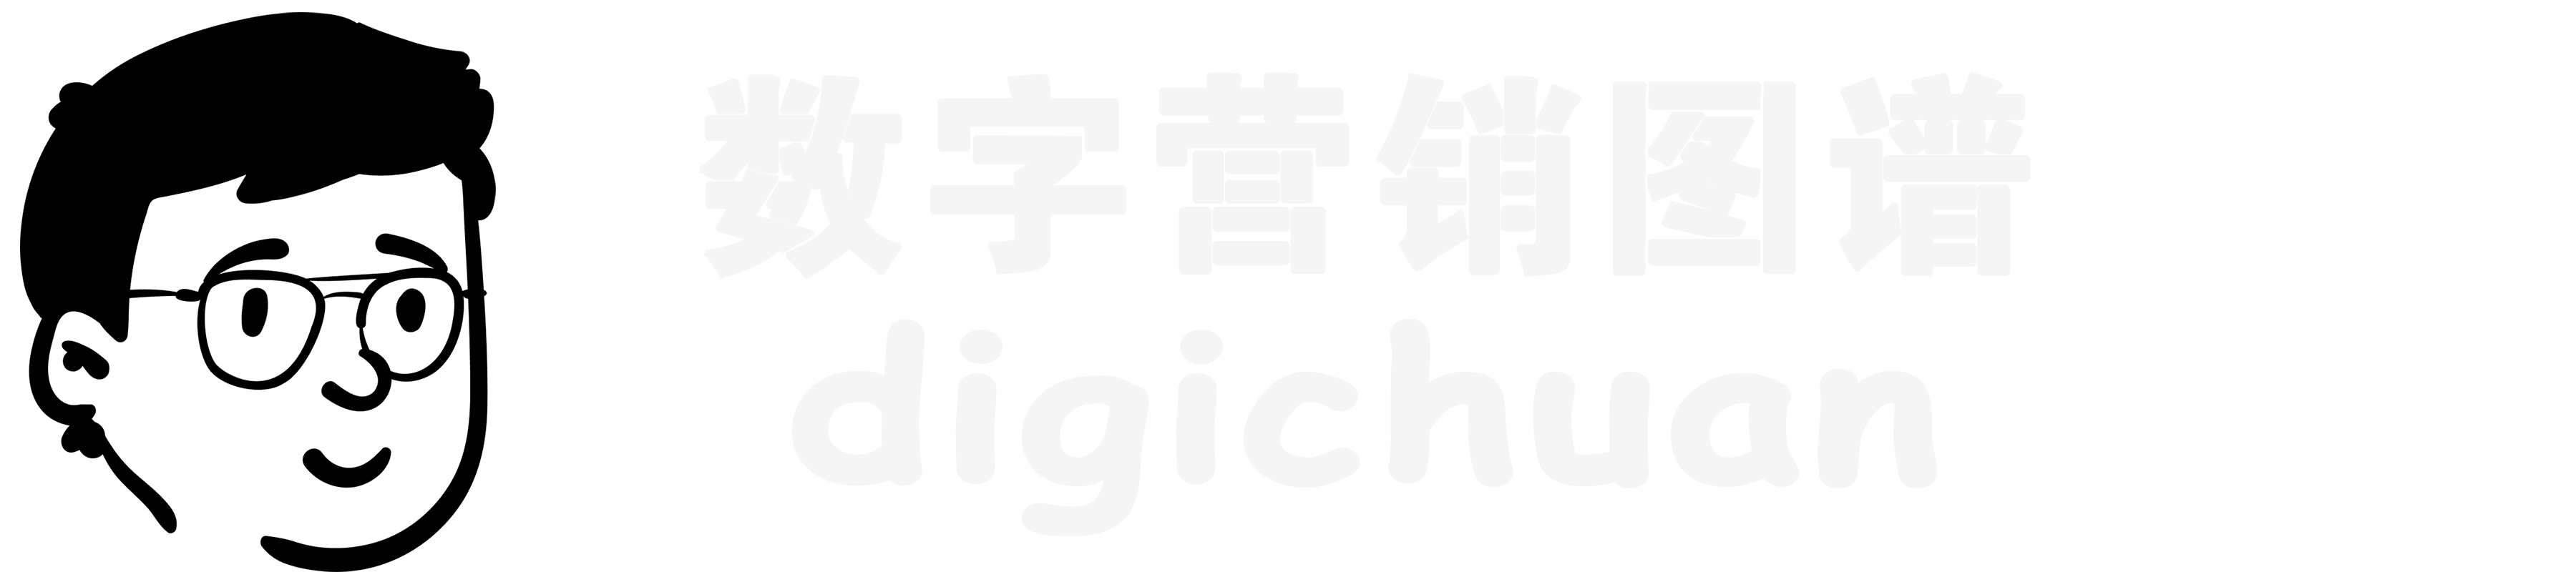 DigiChuan|数字营销图谱导航